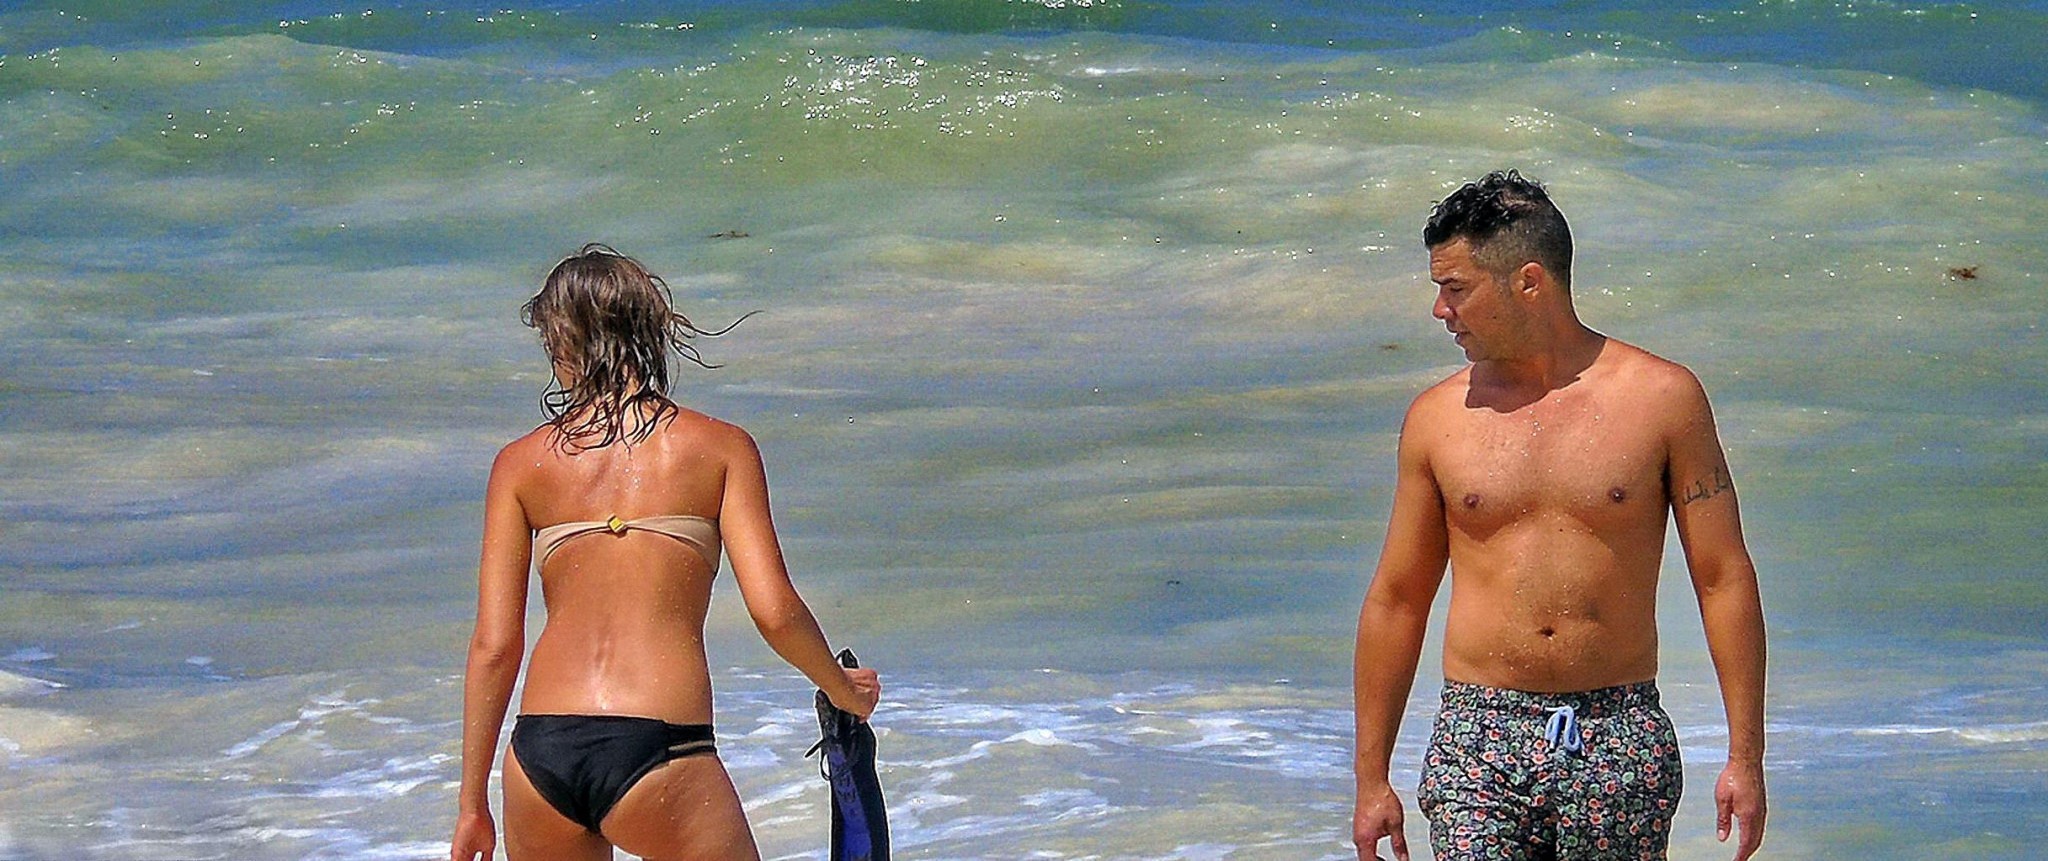 Jessica alba portant un bikini sans bretelles sur une plage au mexique
 #75191652